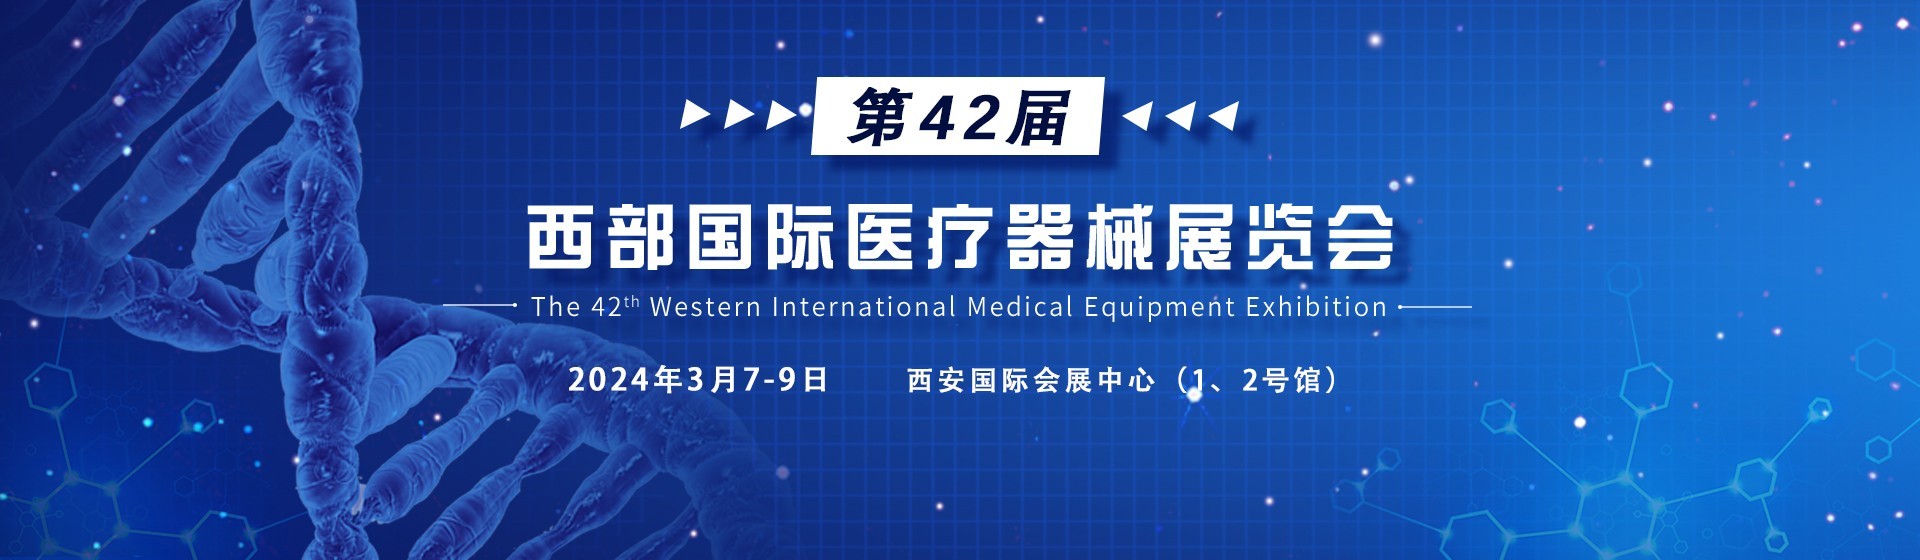 2023女足世界杯诚邀您参加第42届西部国际医疗器械展